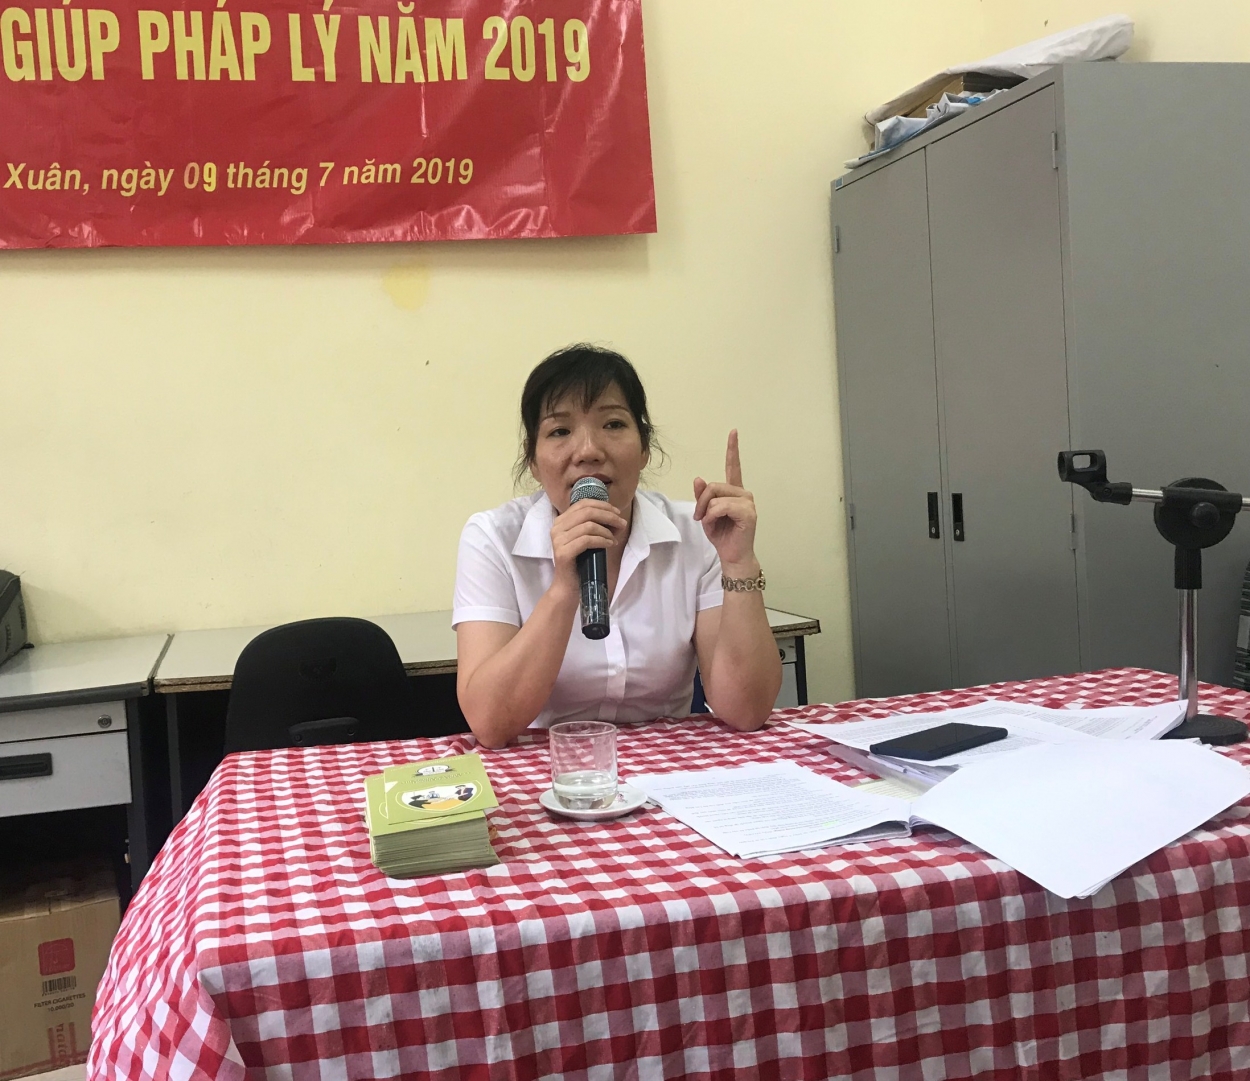 Chị Phan Thị Thu Trang, Trưởng chi nhánh Trợ giúp pháp lý số 2, Trung tâm Trợ giúp pháp lý Nhà nước, Sở Tư pháp Thành phố Hà Nội chia sẻ tại Hội nghị